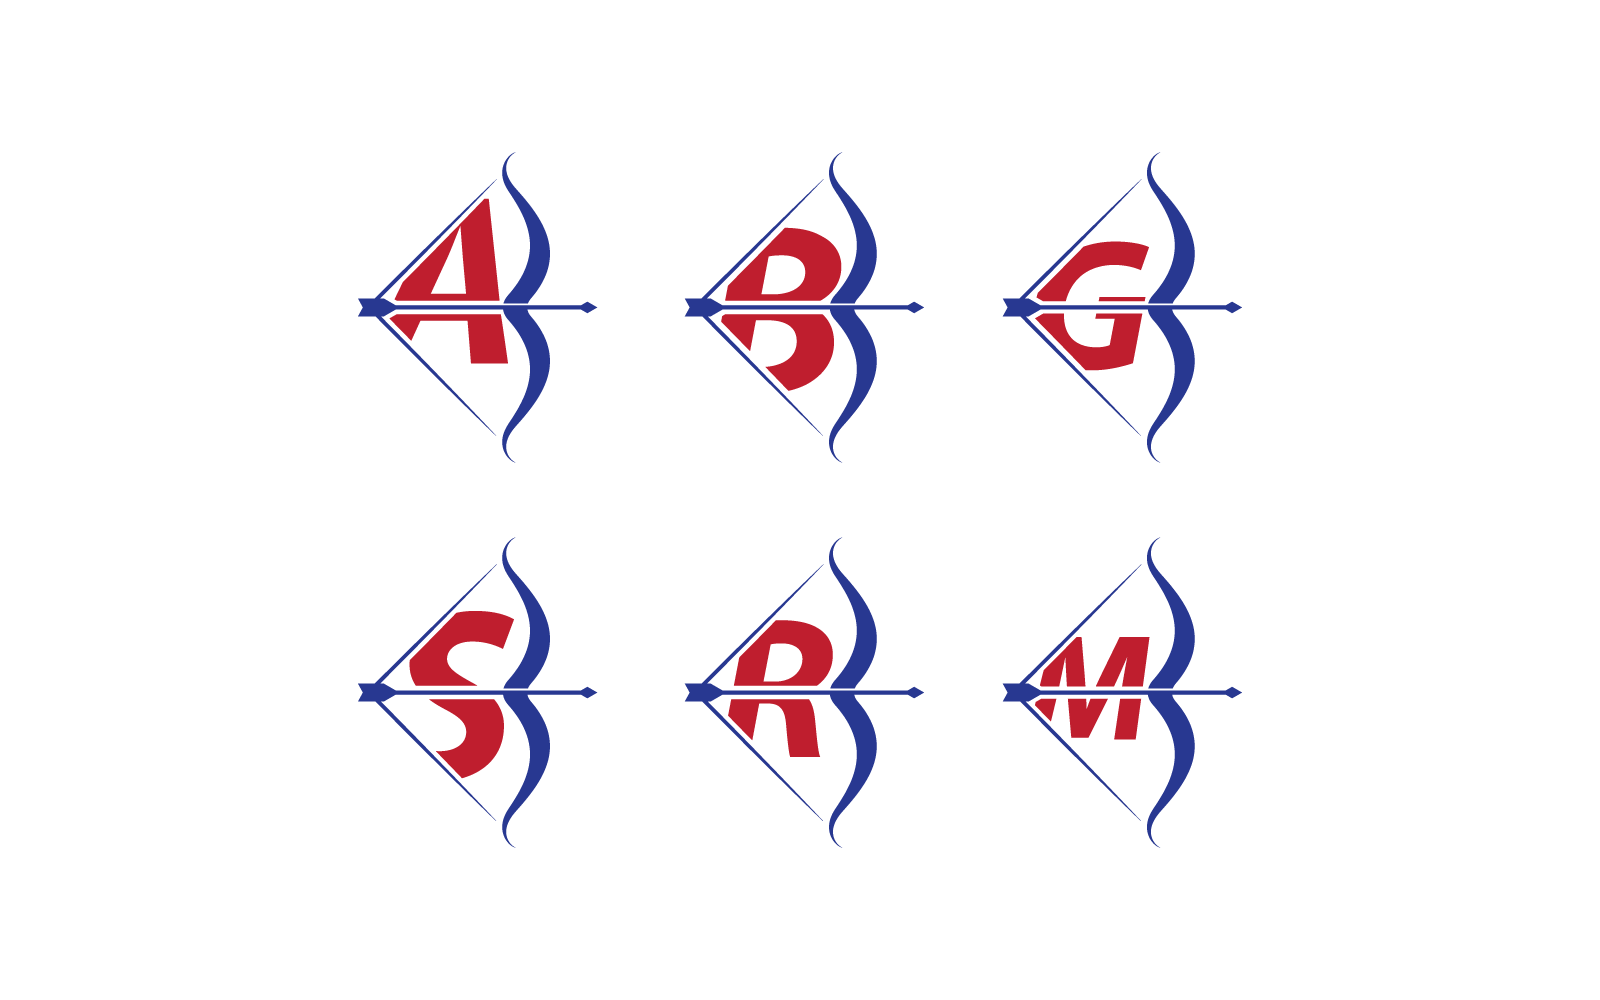 Дизайн векторной иллюстрации логотипа стрельбы из лука